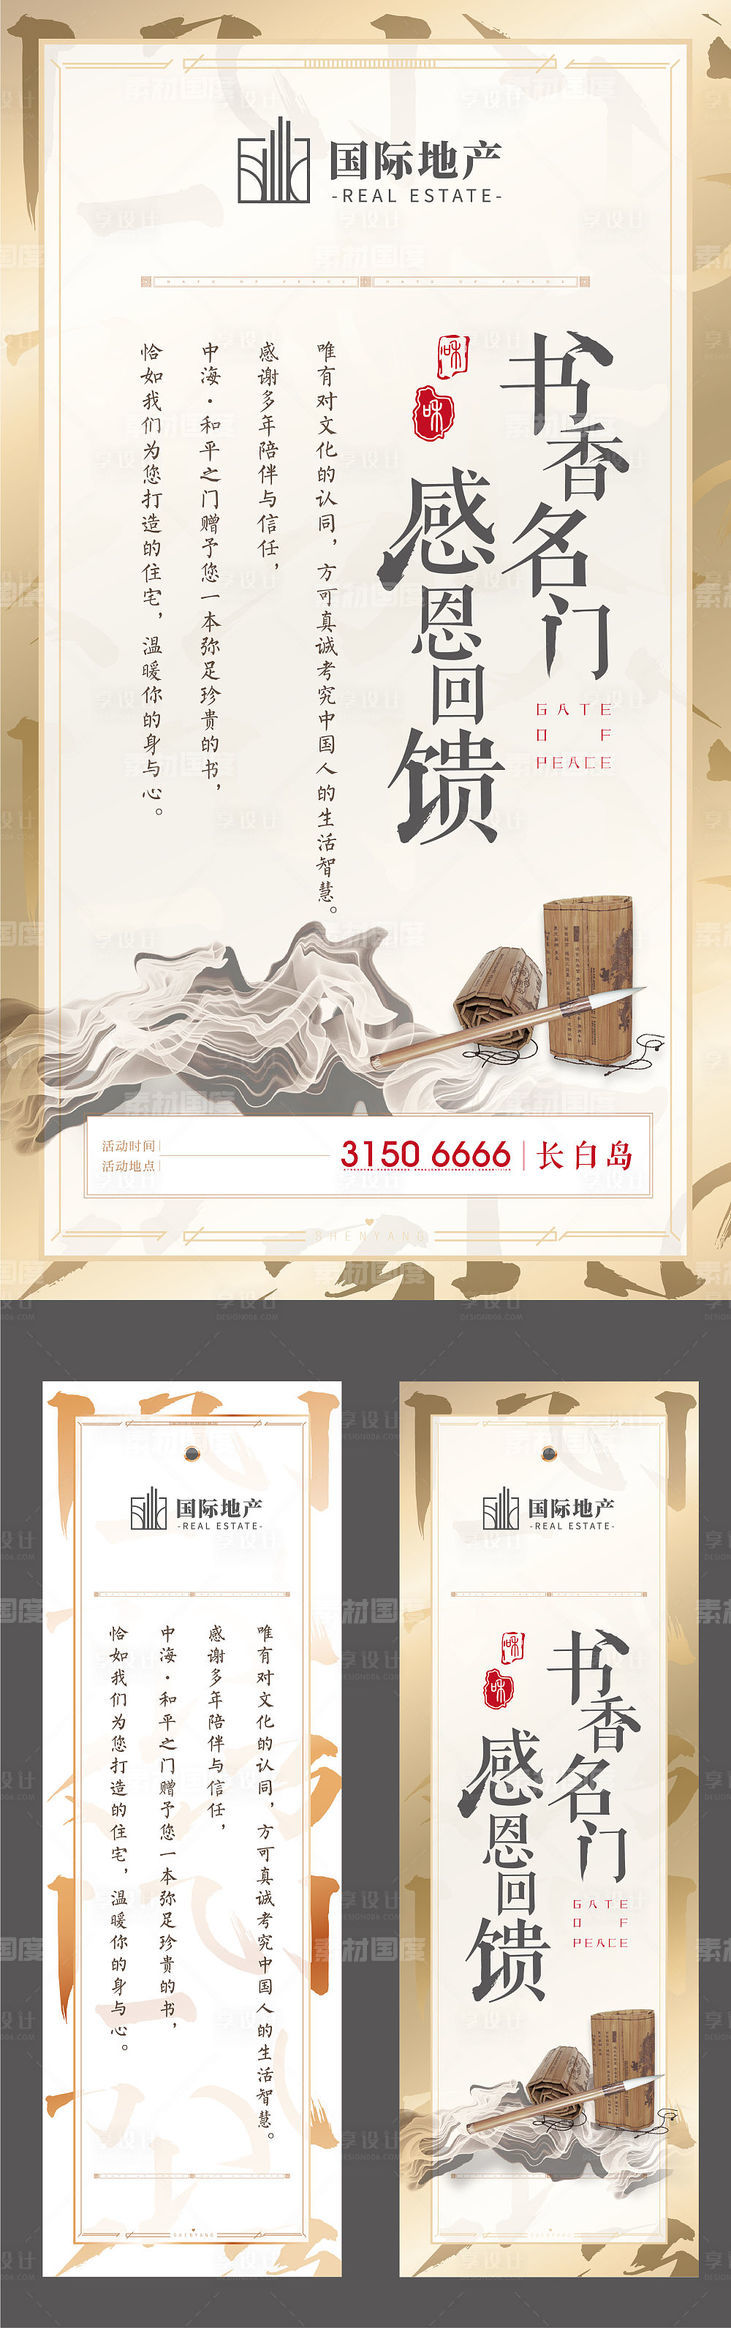 新中式水墨风毛笔高端大气读书书签海报